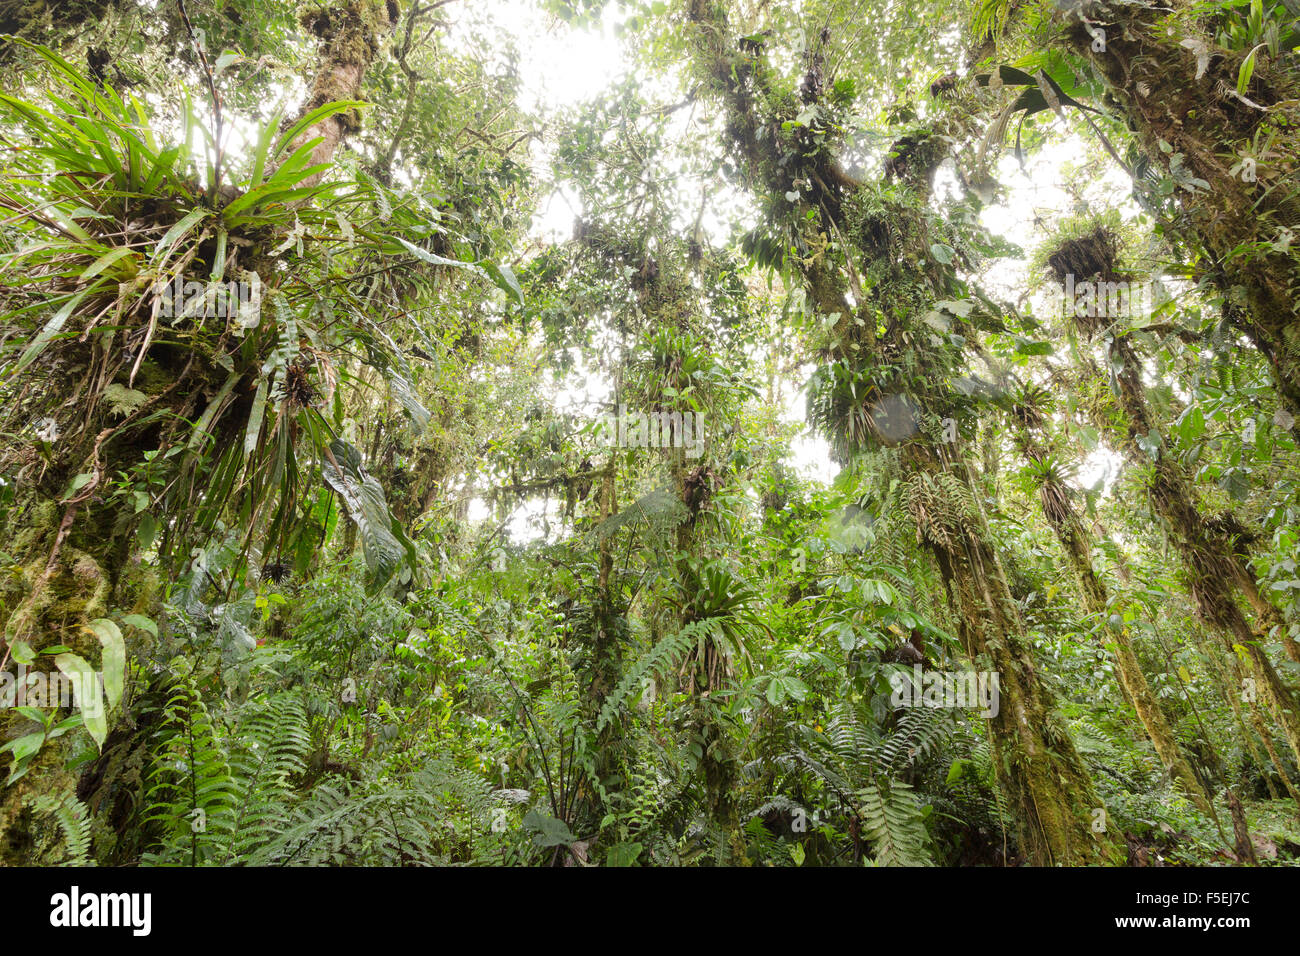 Epífita laden árboles en húmedo nuboso a 2.200m de altitud en la vertiente amazónica de la Cordillera de Los Andes en Ecuador Foto de stock